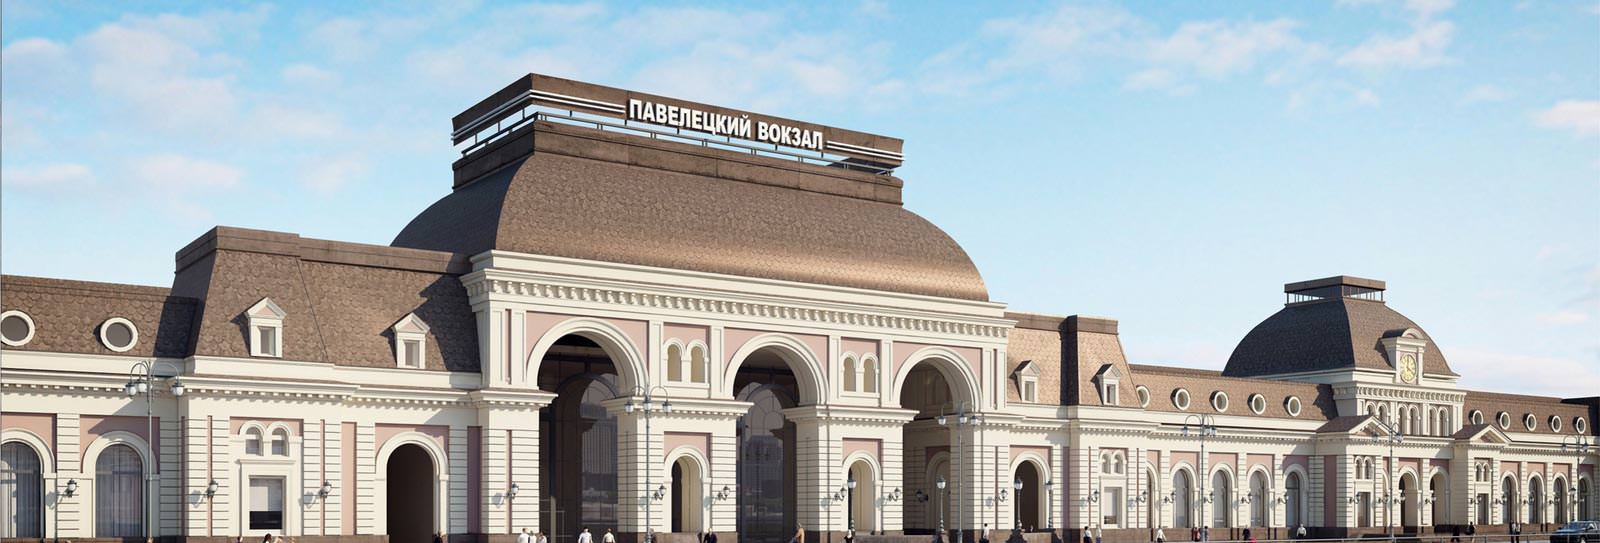 Вокзал Павелецкий: купить жд билеты на поезд на сайте